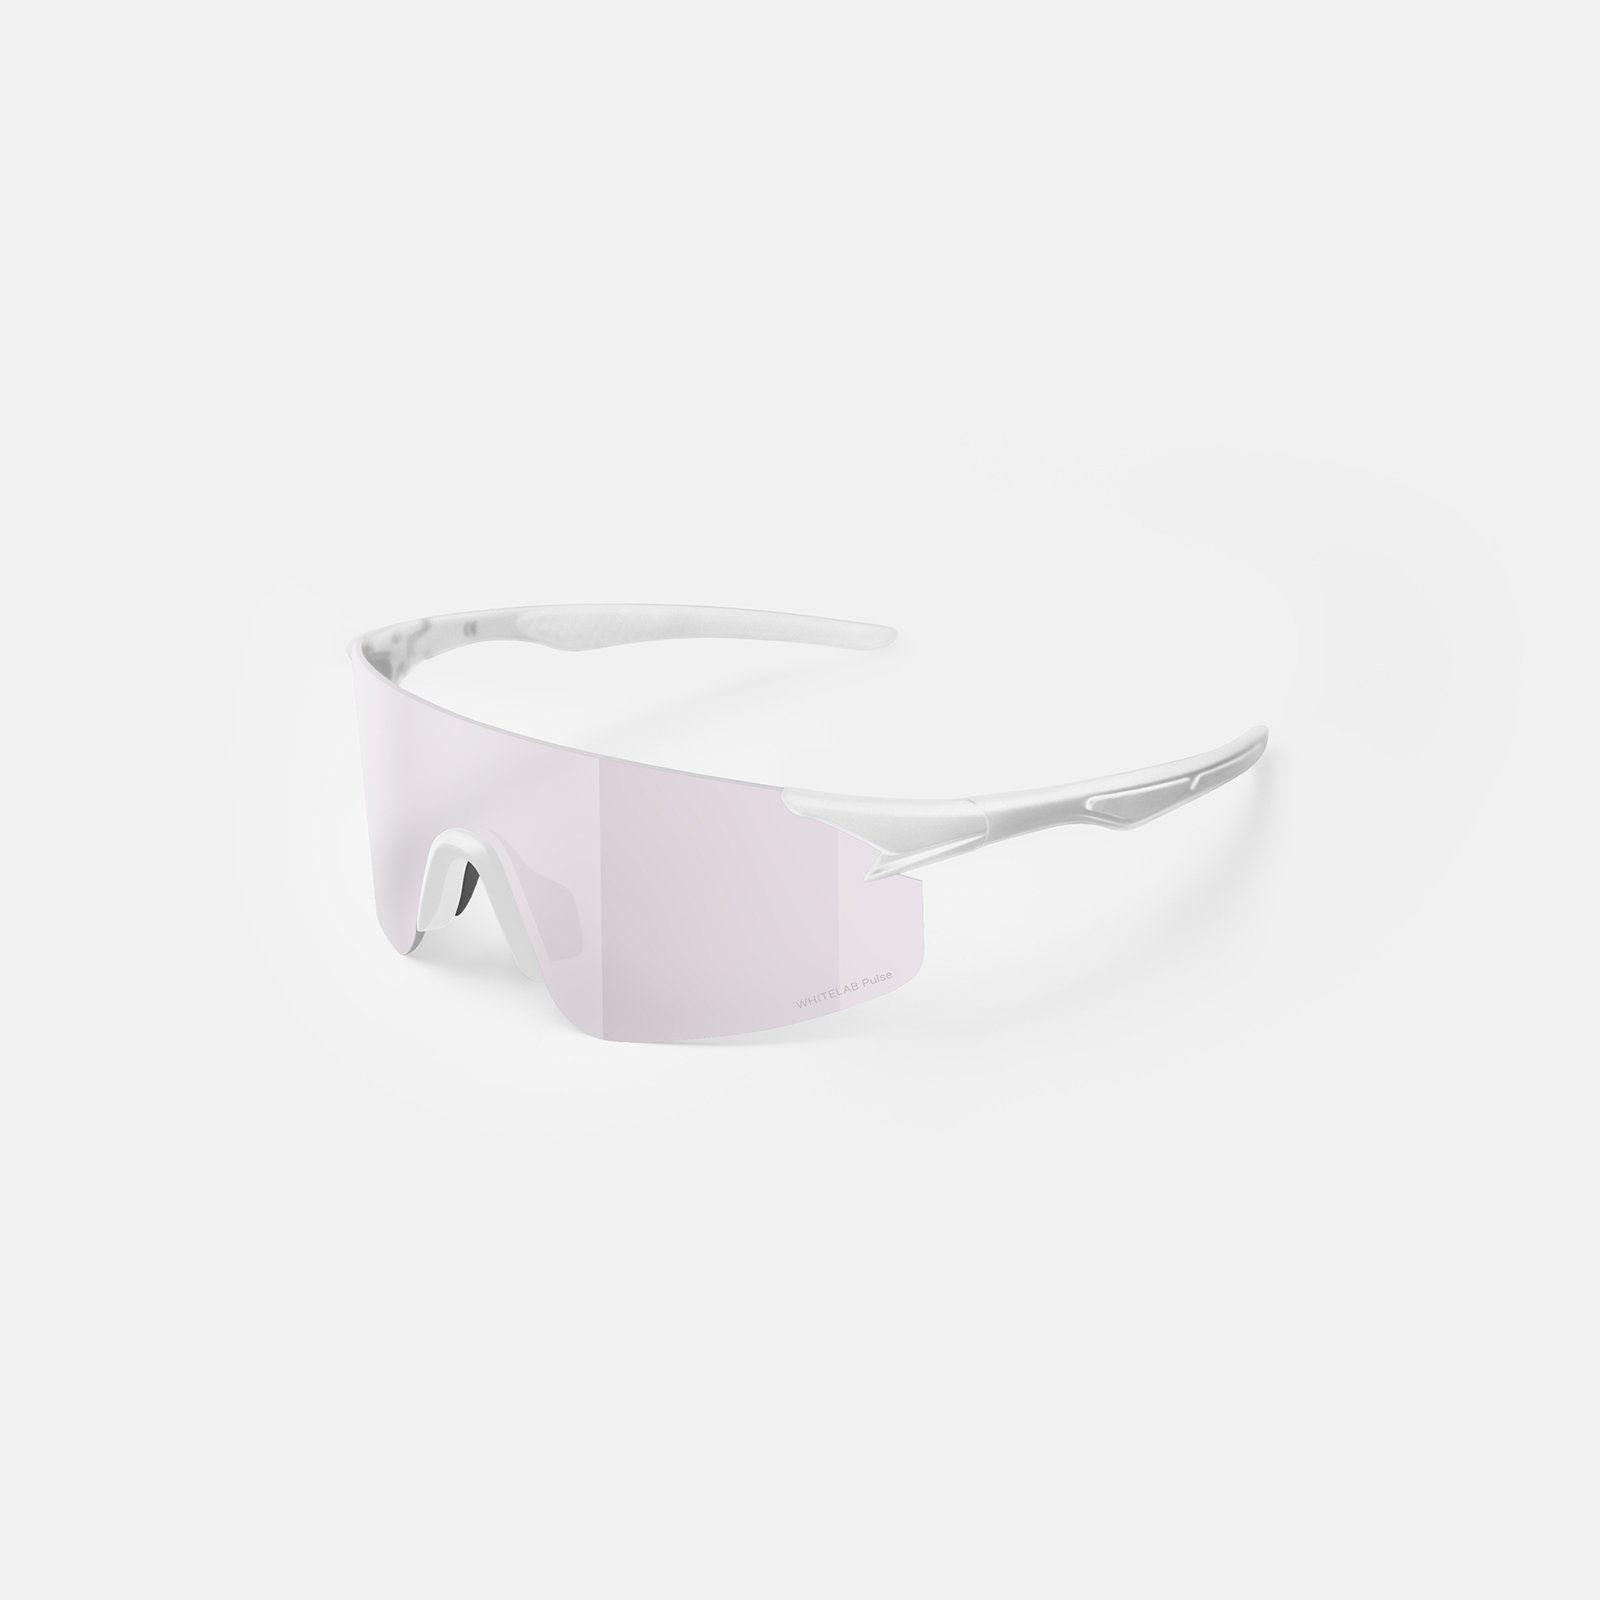  синие солнцезащитные очки White Lab Visor Visor white/ultramarin - цена, описание, фото 3